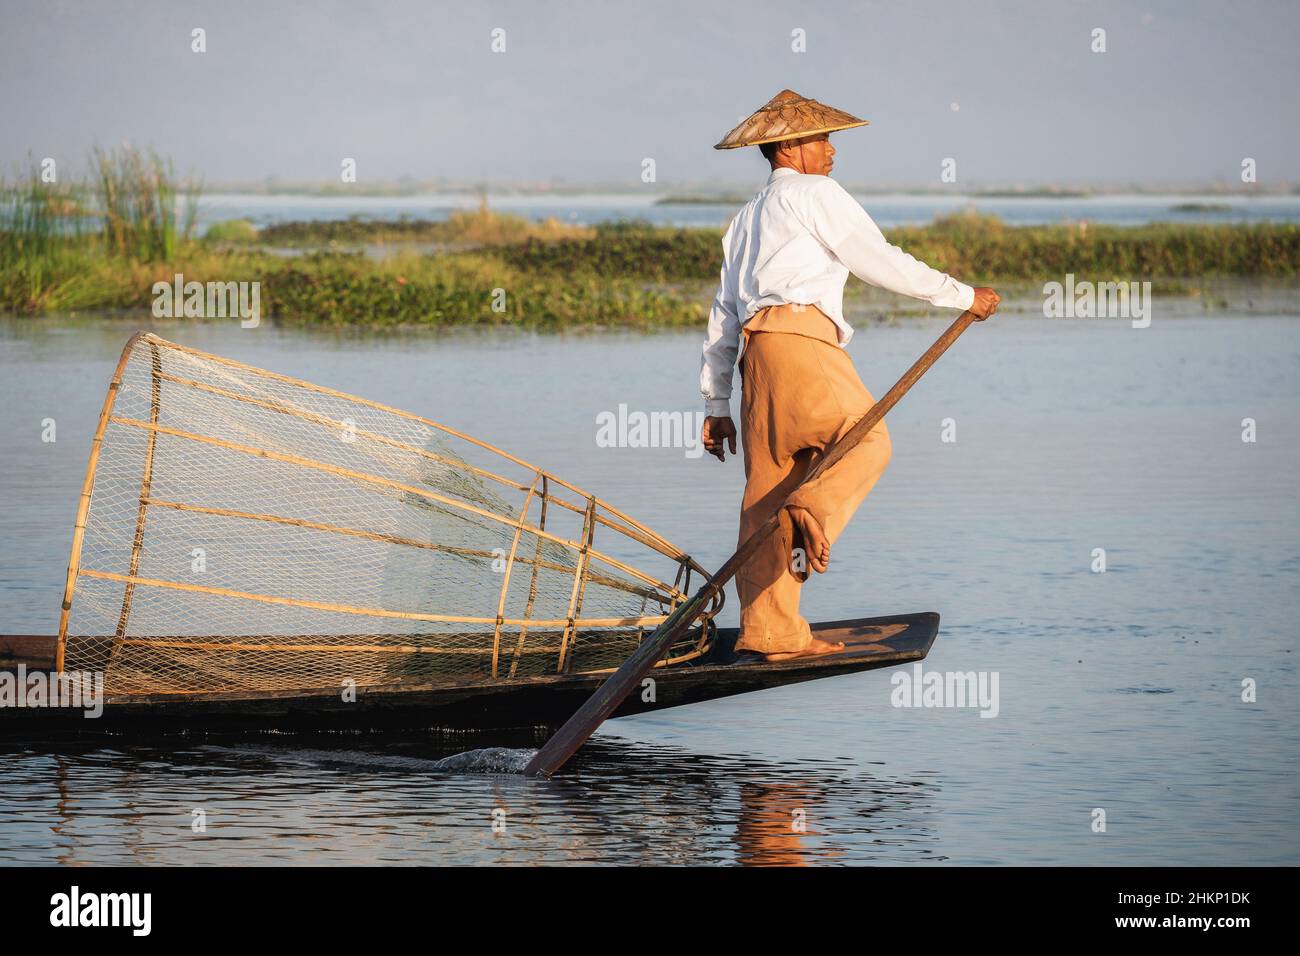 Intha pêche à l'aviron dans un style traditionnel sur le lac Inle, Shan State, Myanmar (Birmanie). Banque D'Images